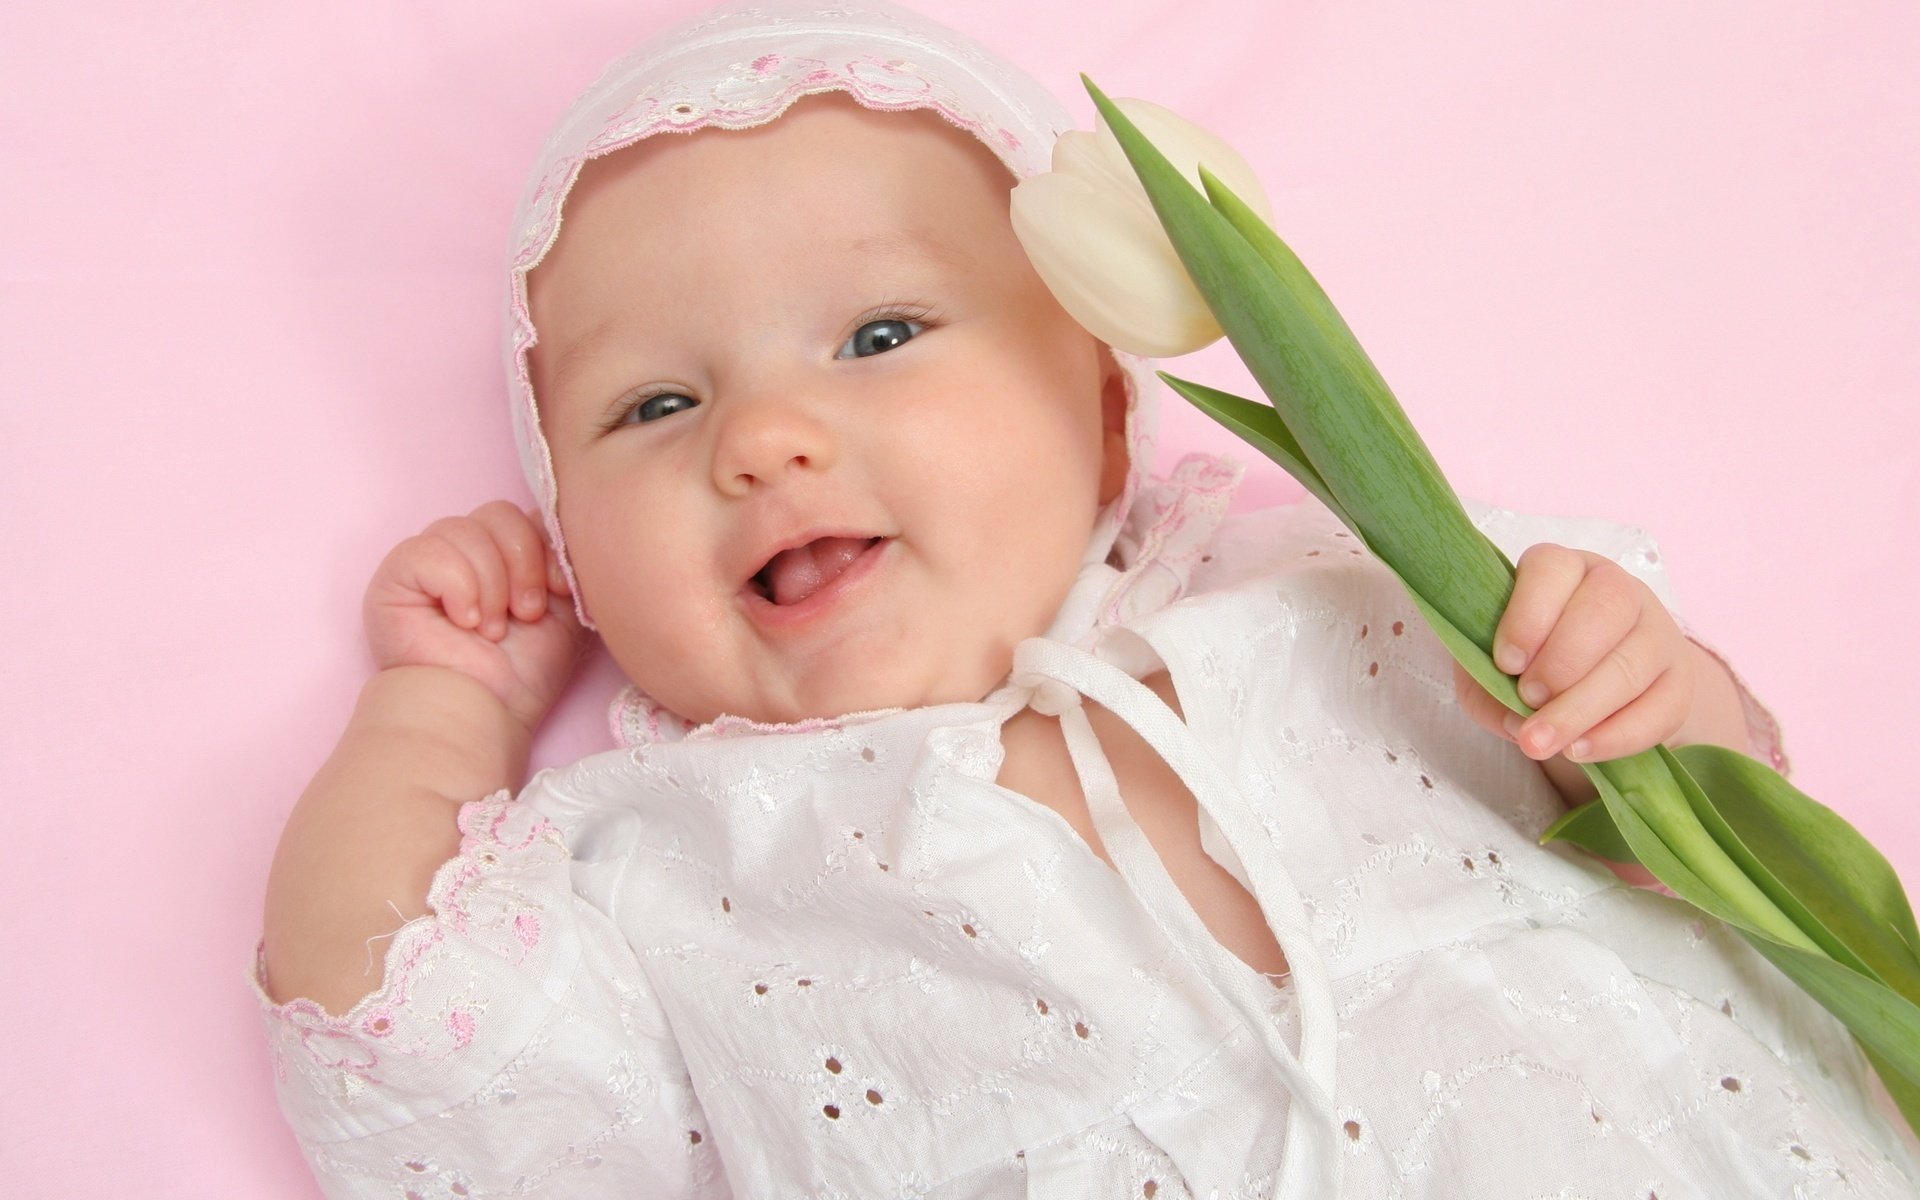 blusas caladas flor bebé retrato mirada sonrisa cara vacaciones